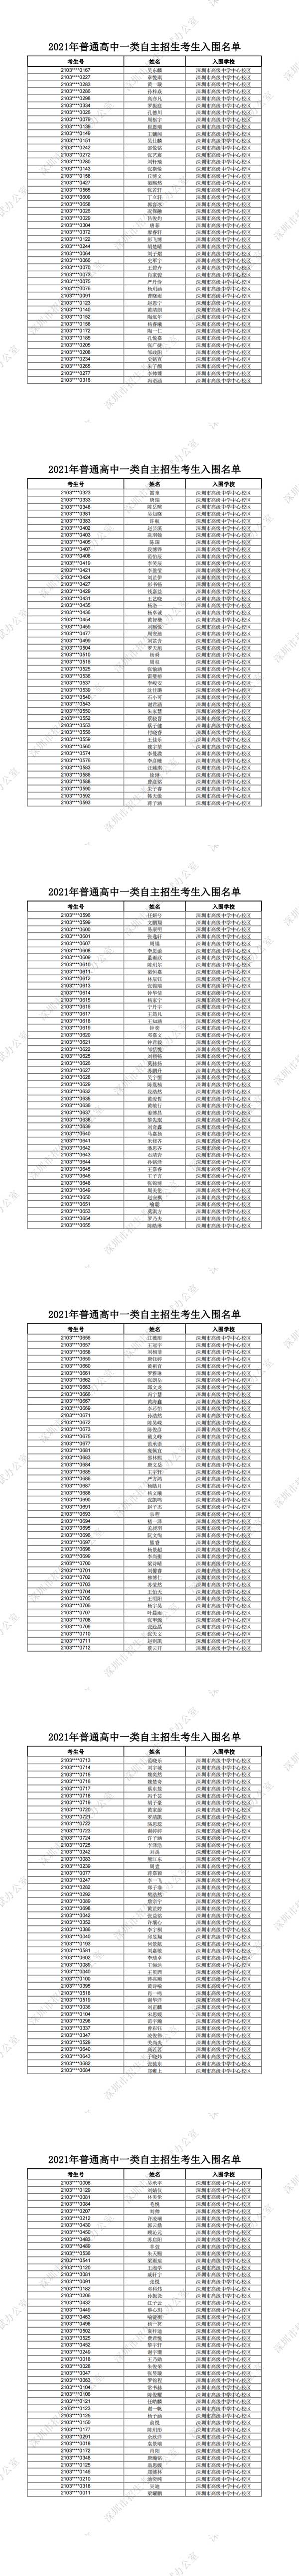 深圳市高级中学中心校区2021年普通高中一类自主招生考生入围名单一览